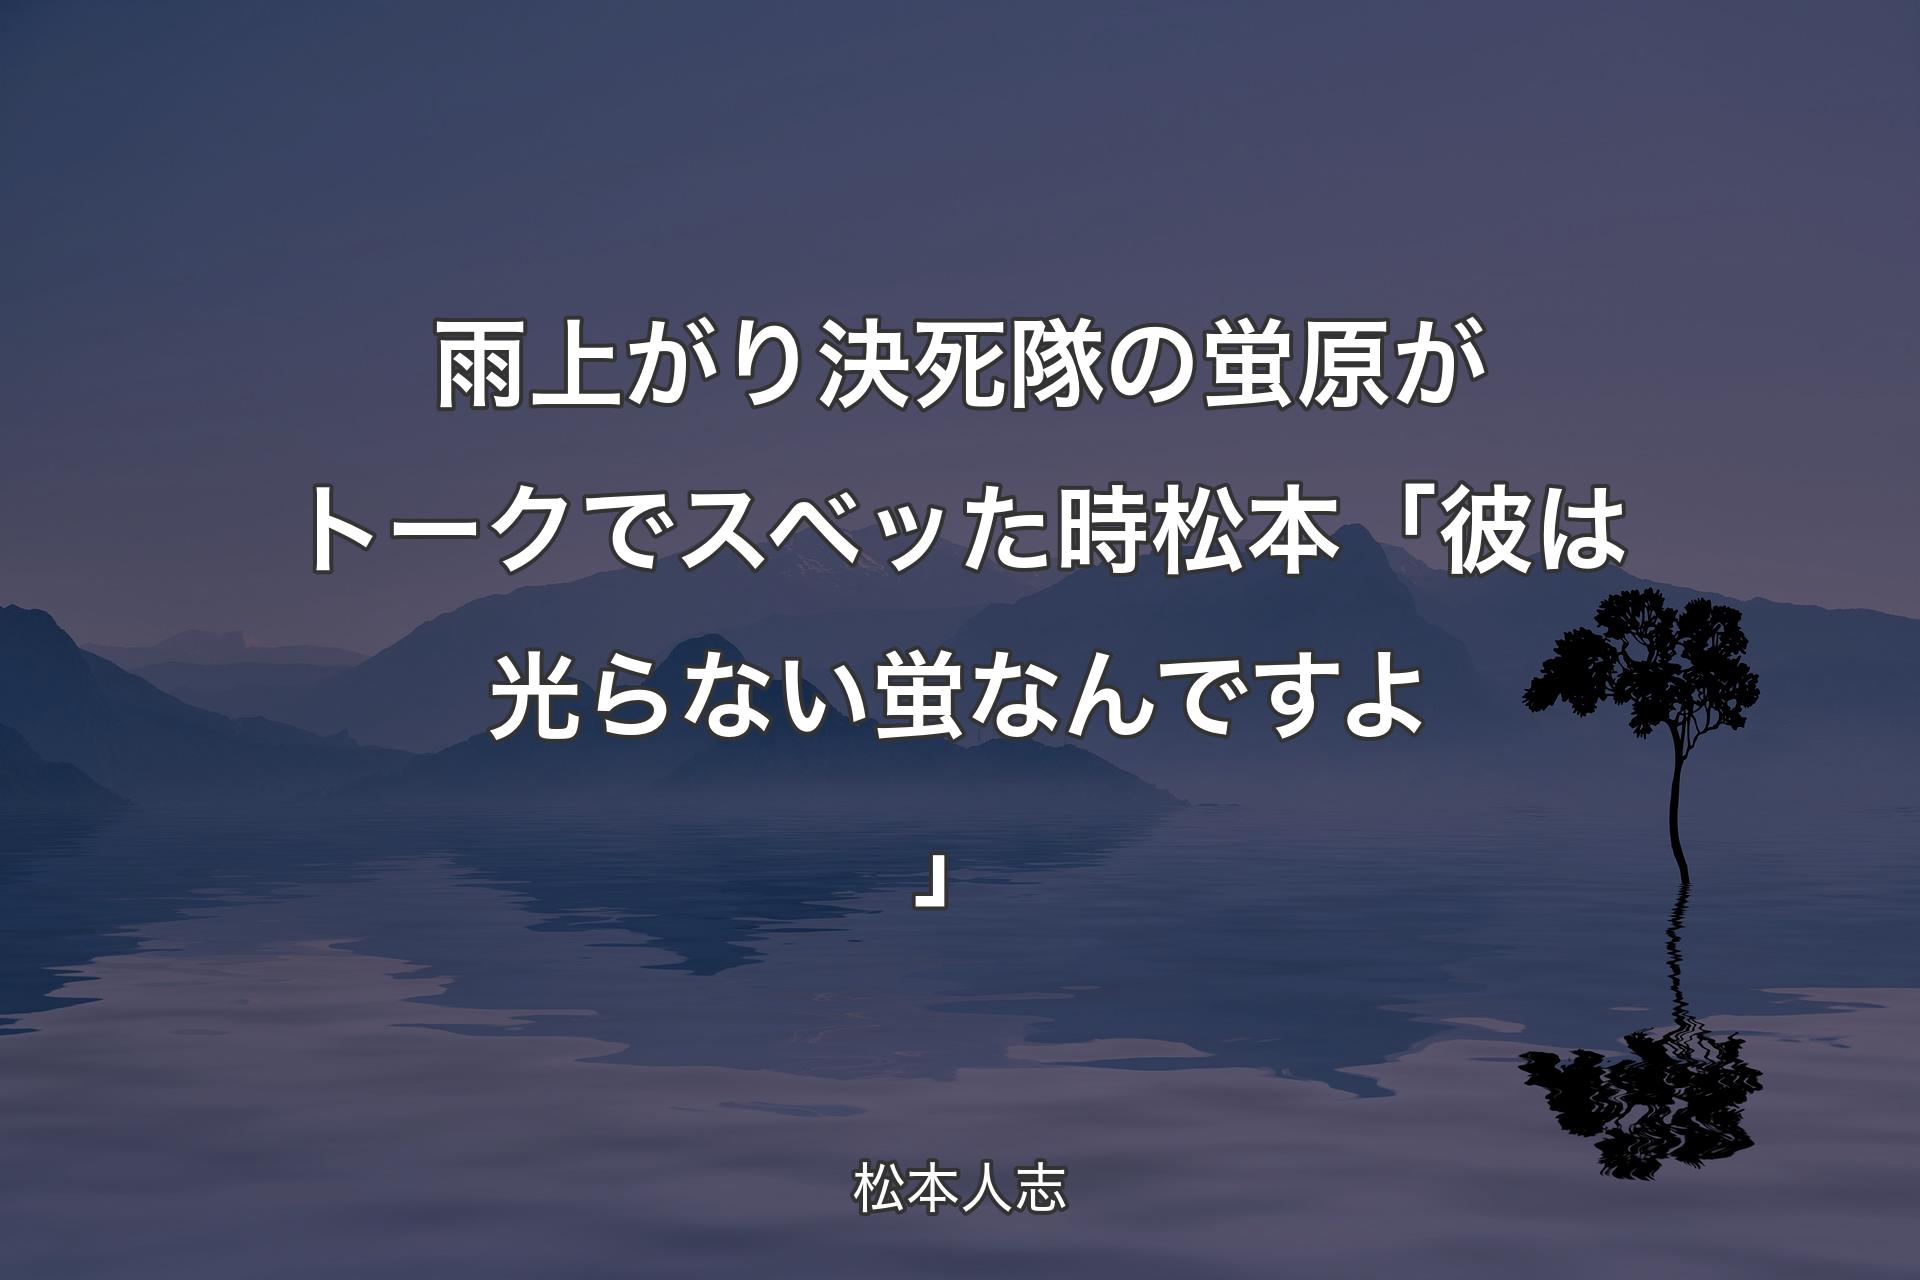 雨上がり決死隊の蛍原がトークでスベッた時 松本「彼は光らない蛍なんですよ」 - 松本人志